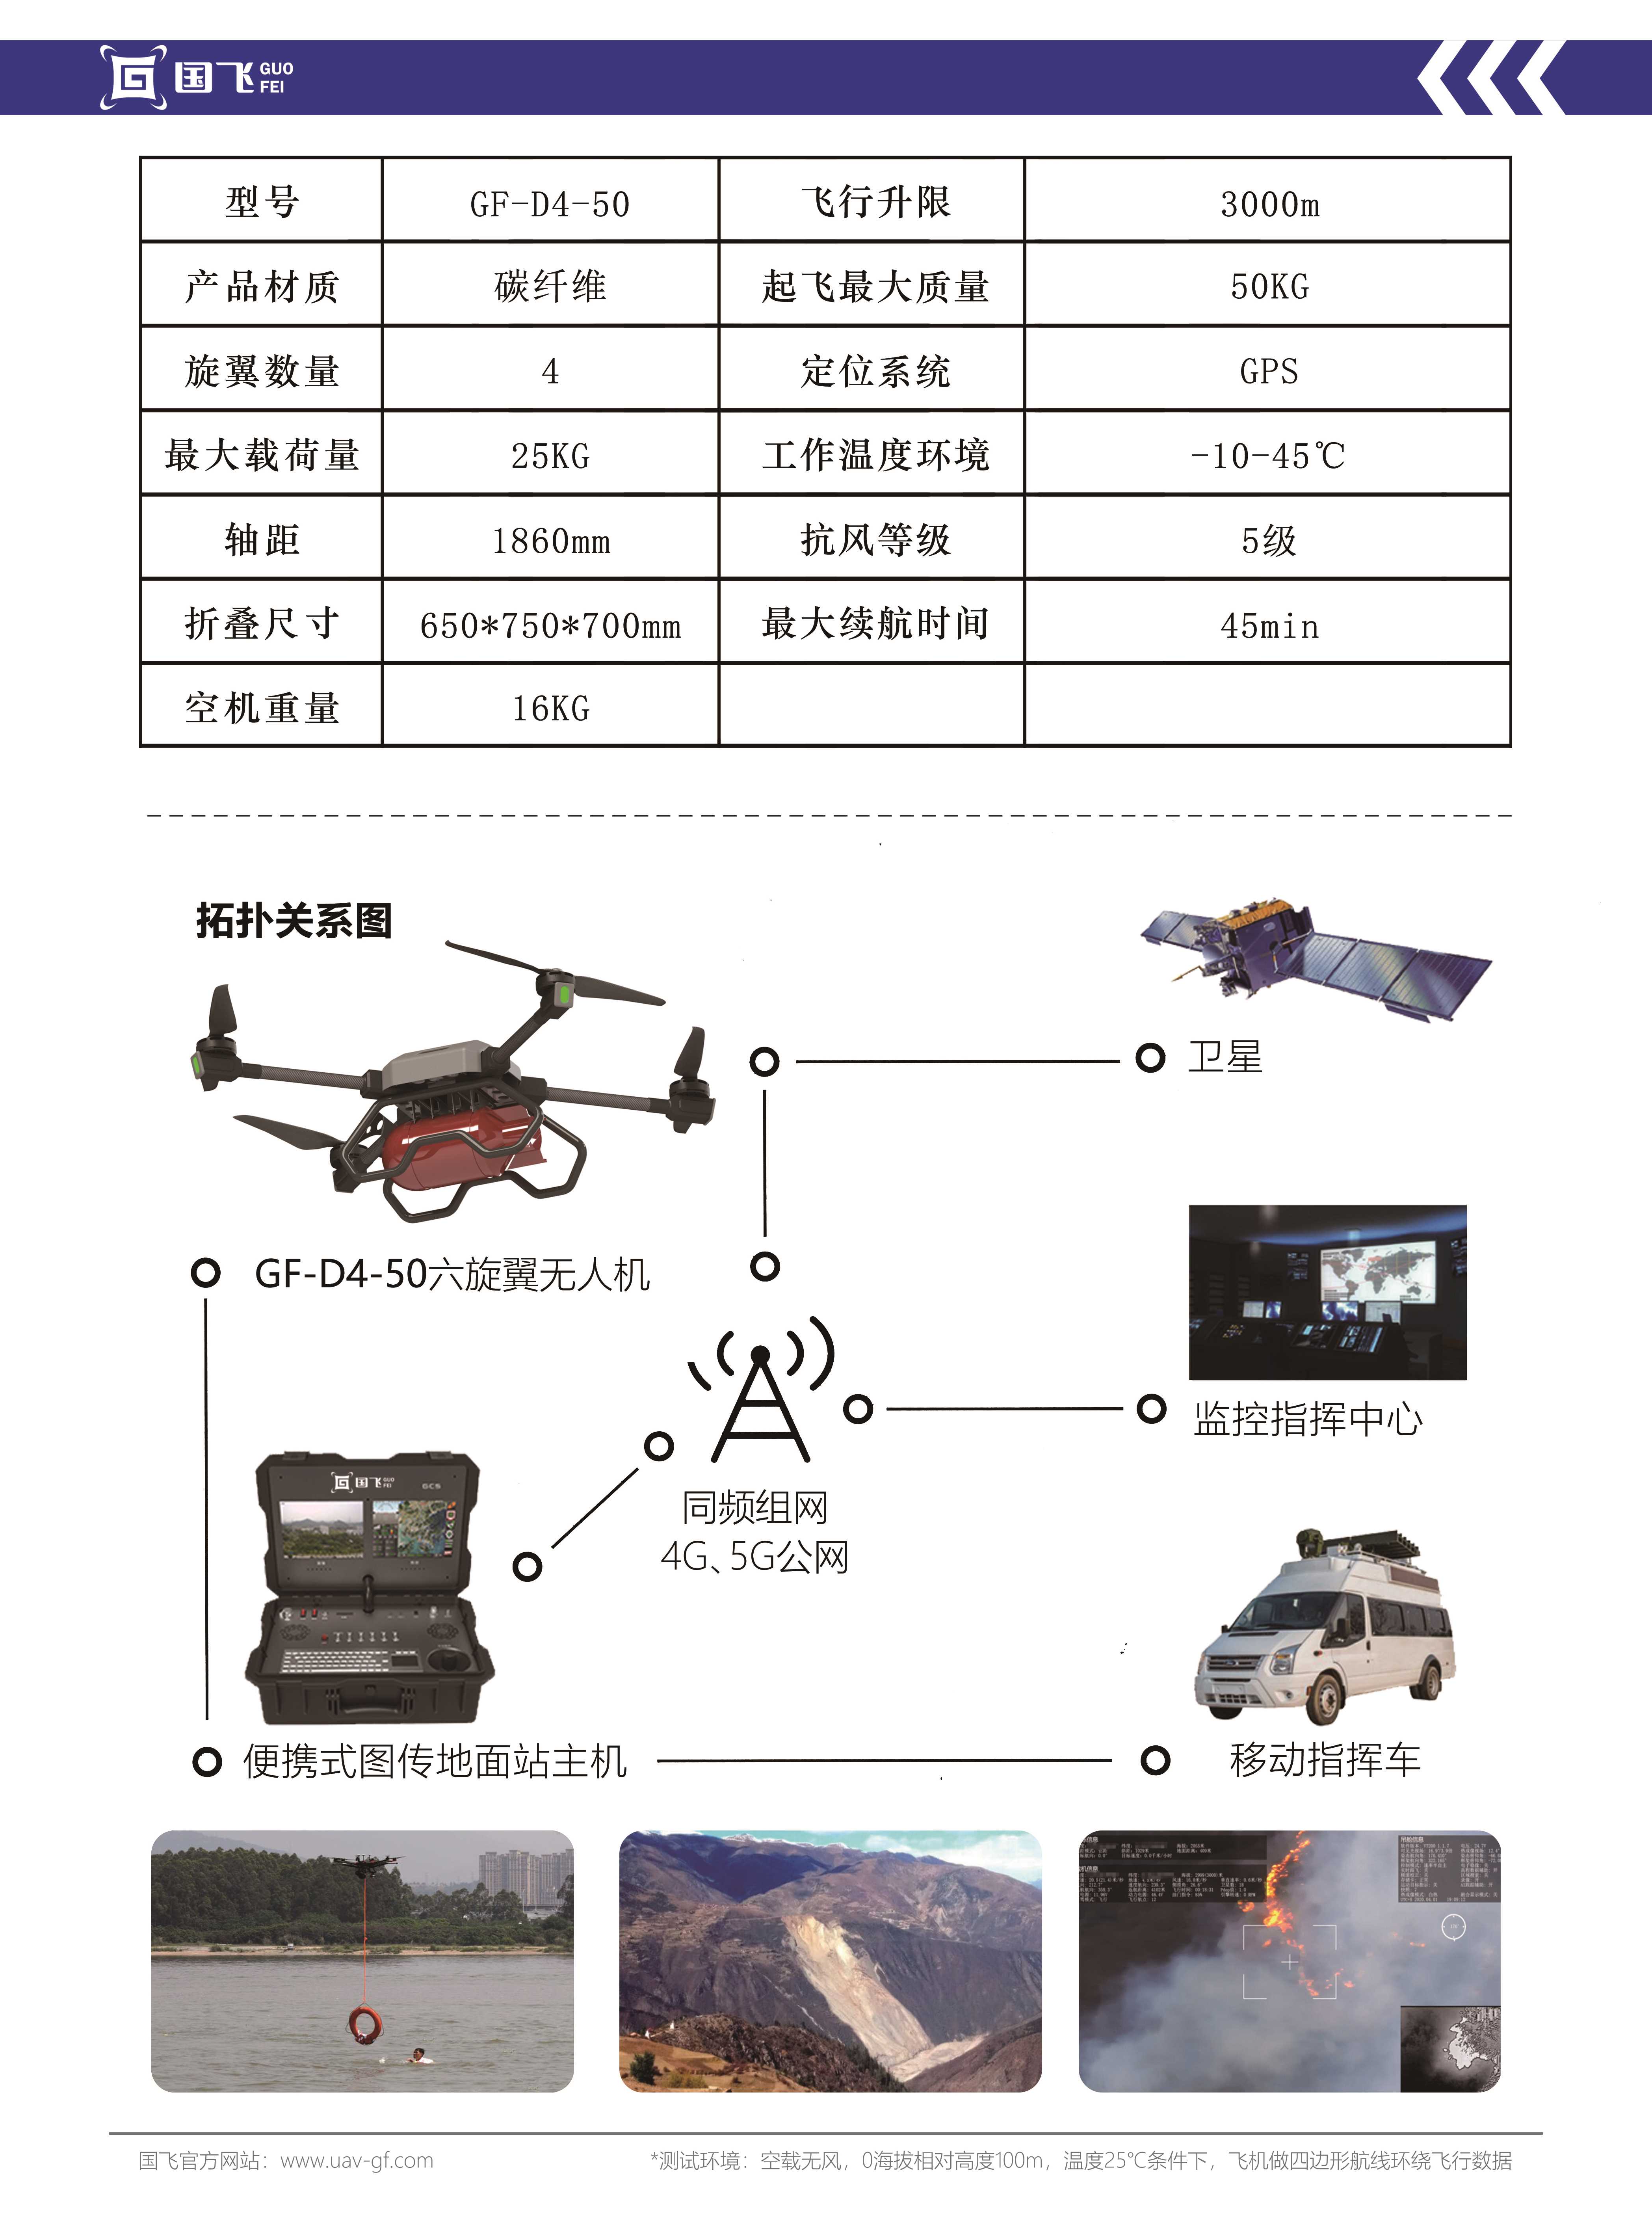 【上品设计】大型物流无人直升机 - 太火鸟-B2B工业设计与产品创新SaaS平台